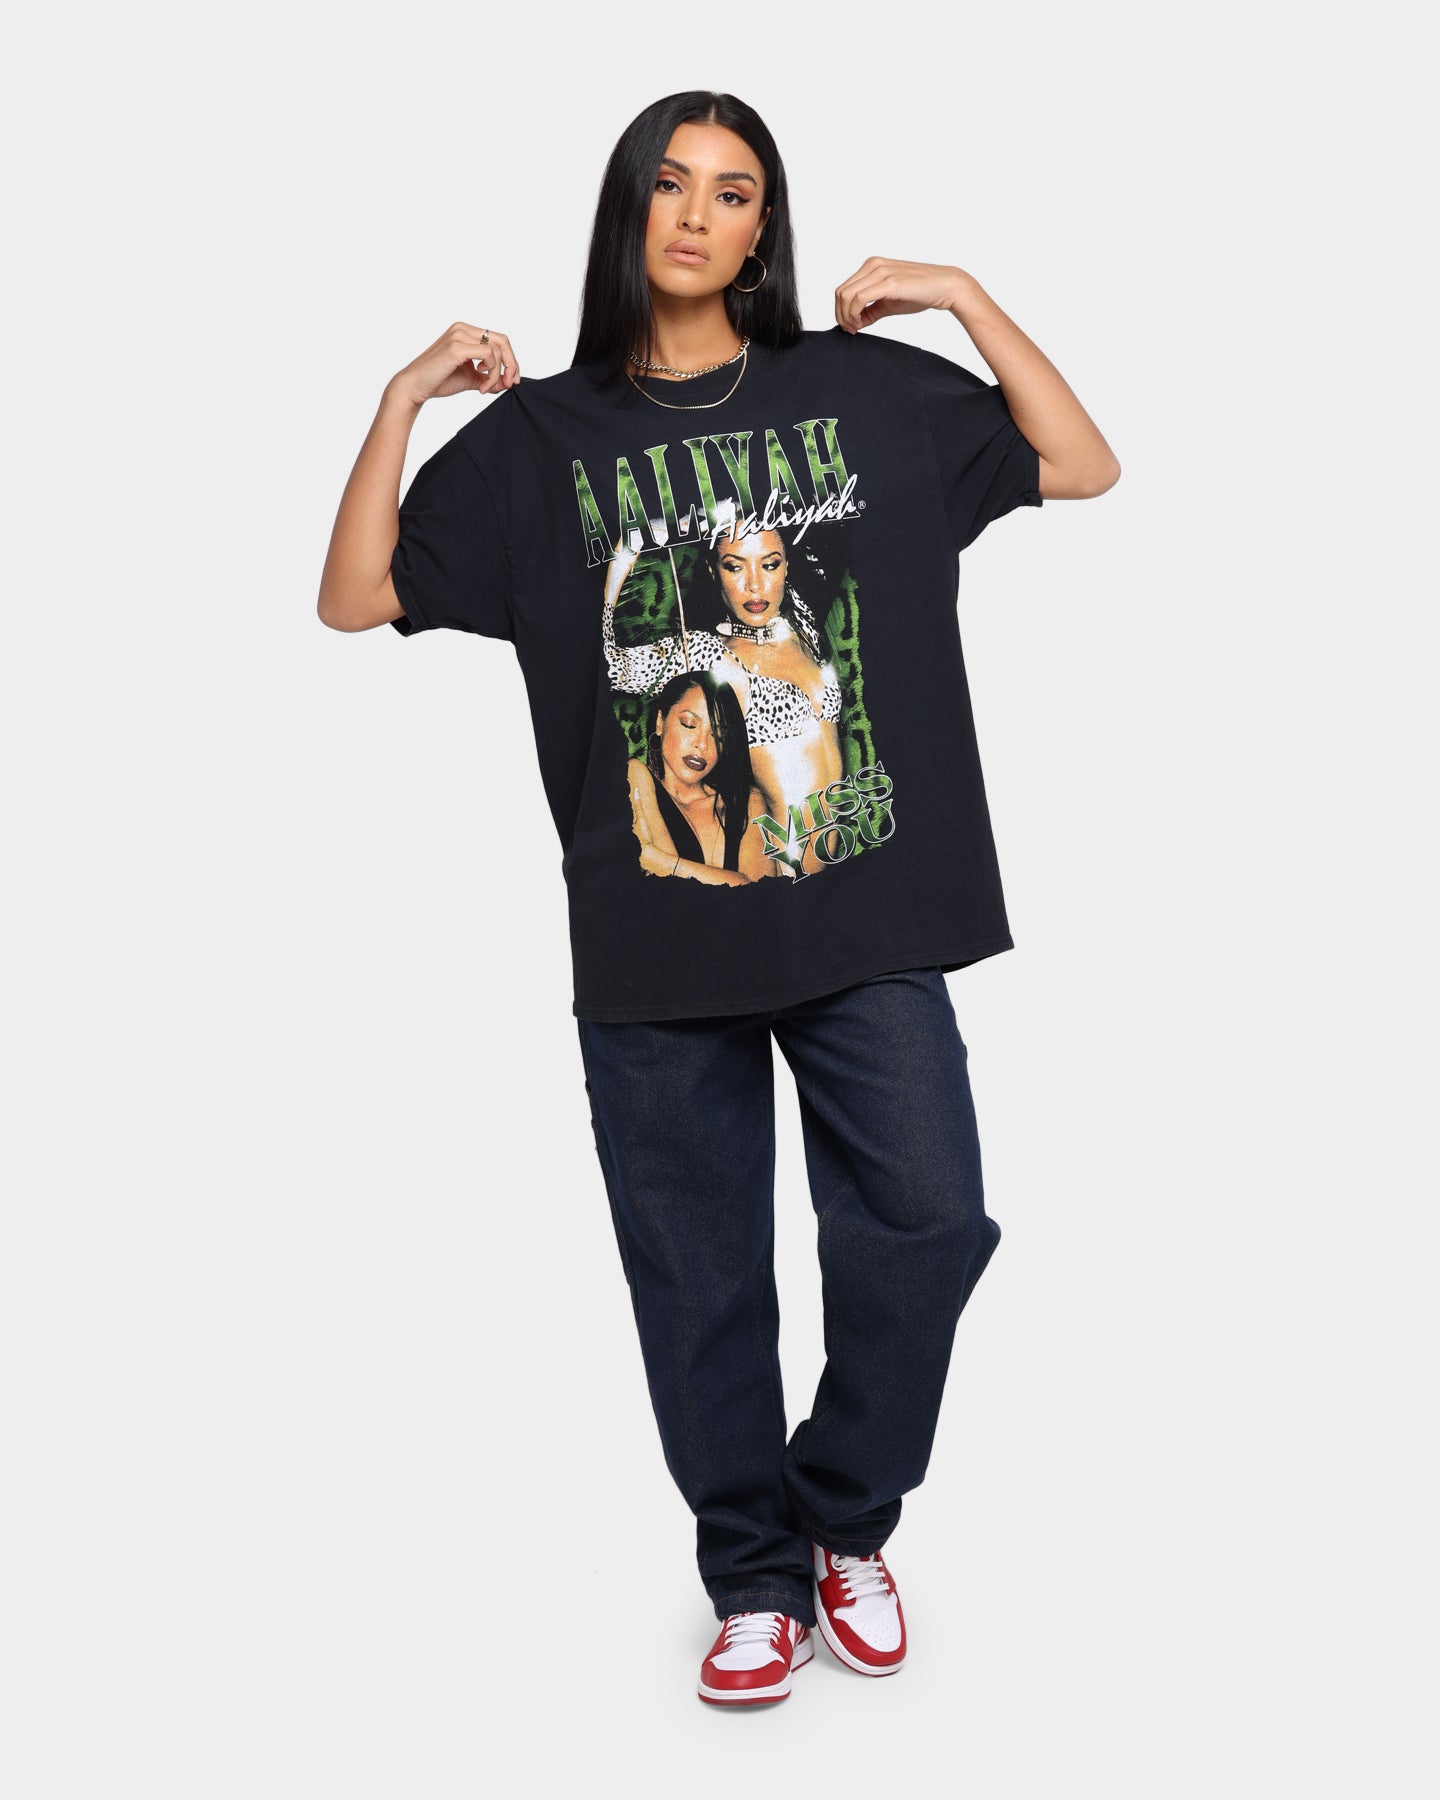 Aaliyah Vintage T Shirt